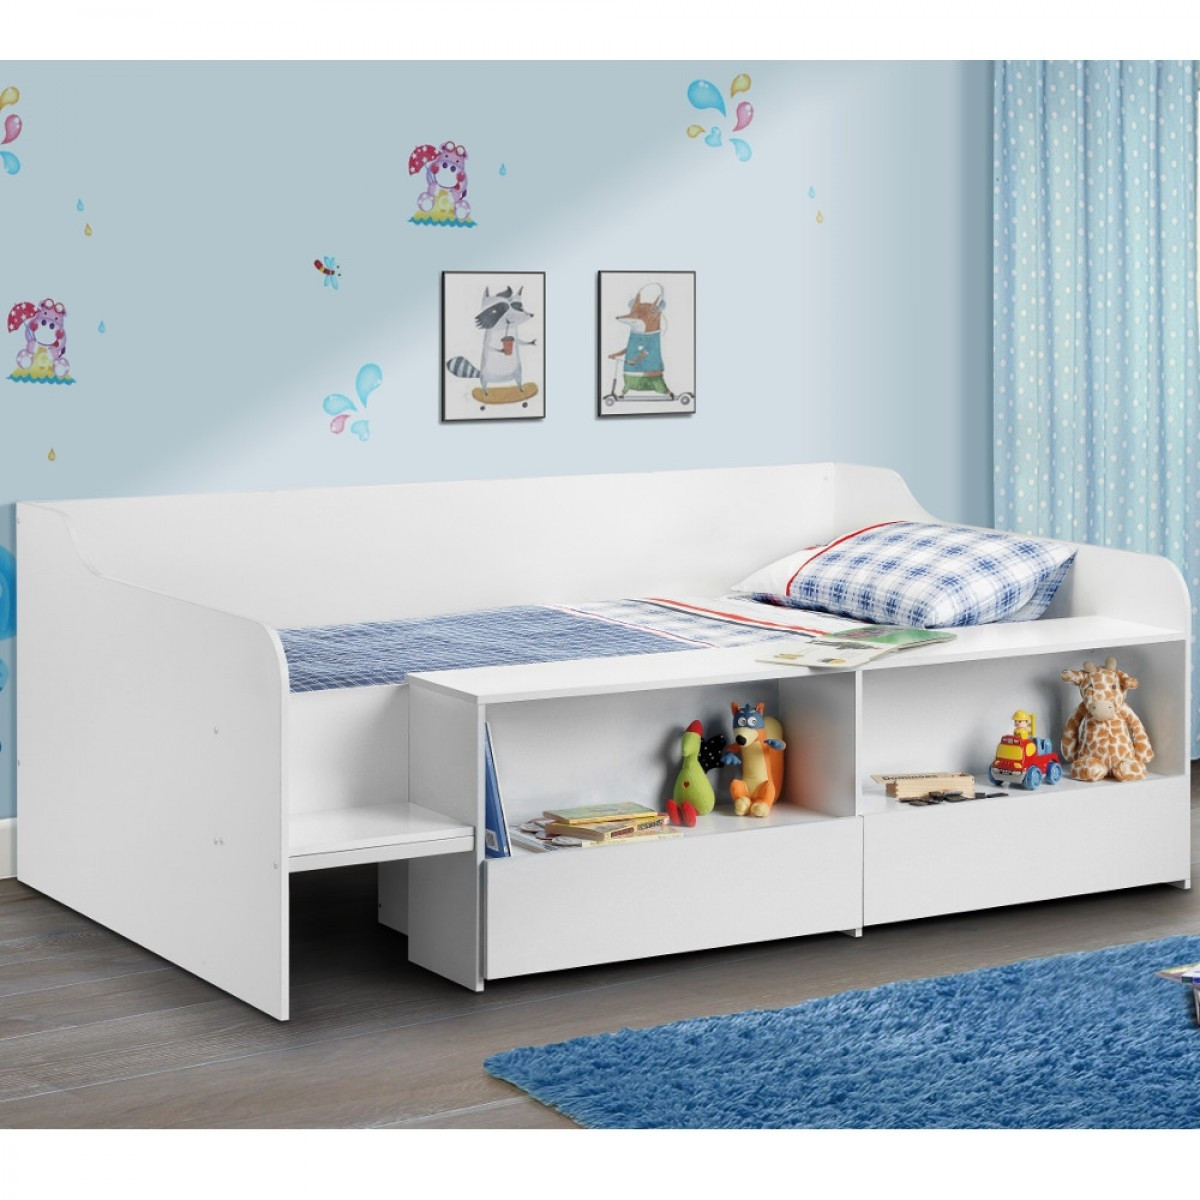 Kids Beds With Storage
 Stella White Wooden Kids Low Sleeper Cabin Storage Bed